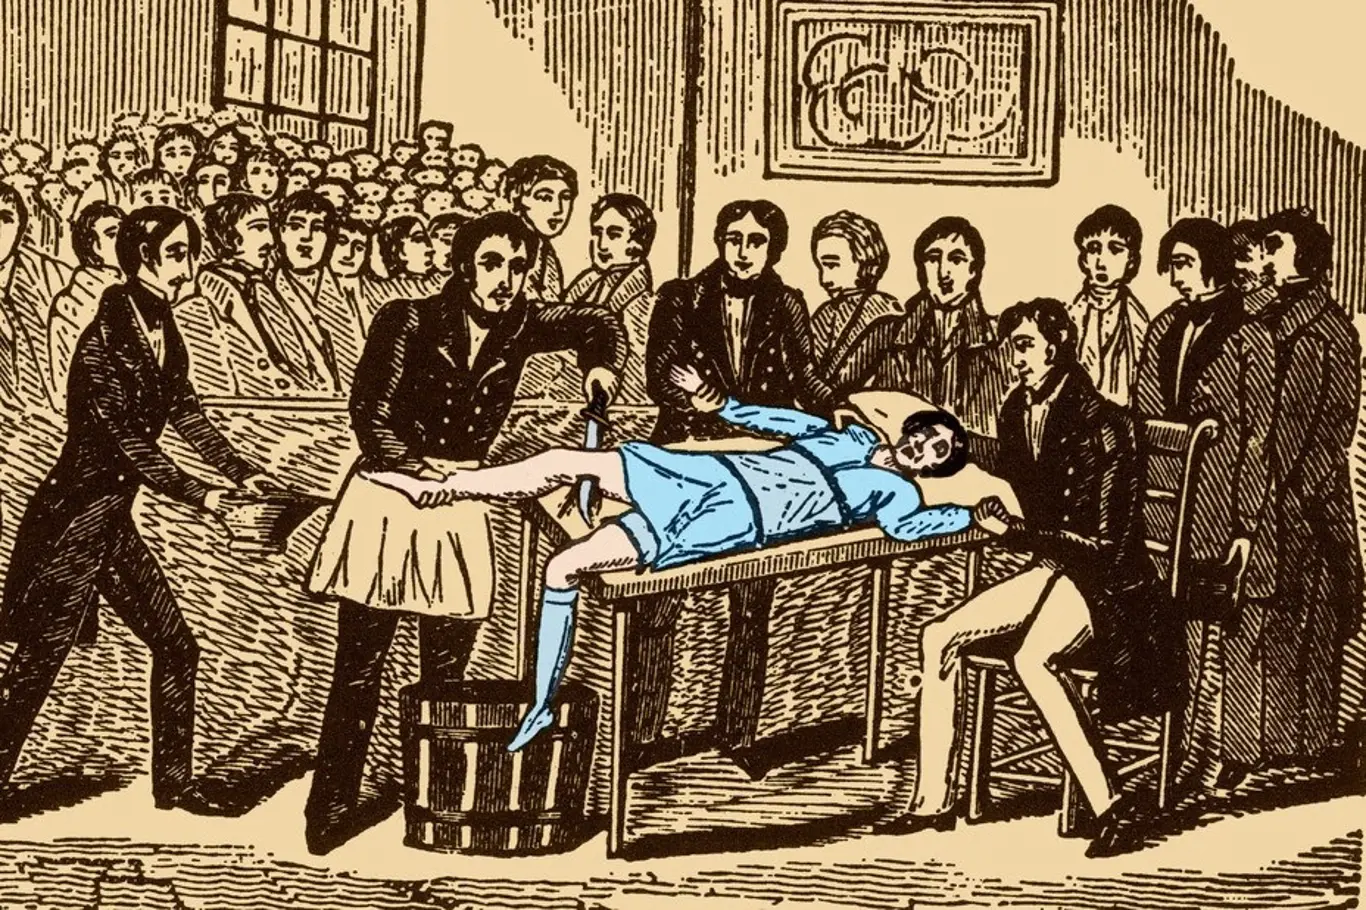 Chirurgický zákrok před vynálezem anestetik